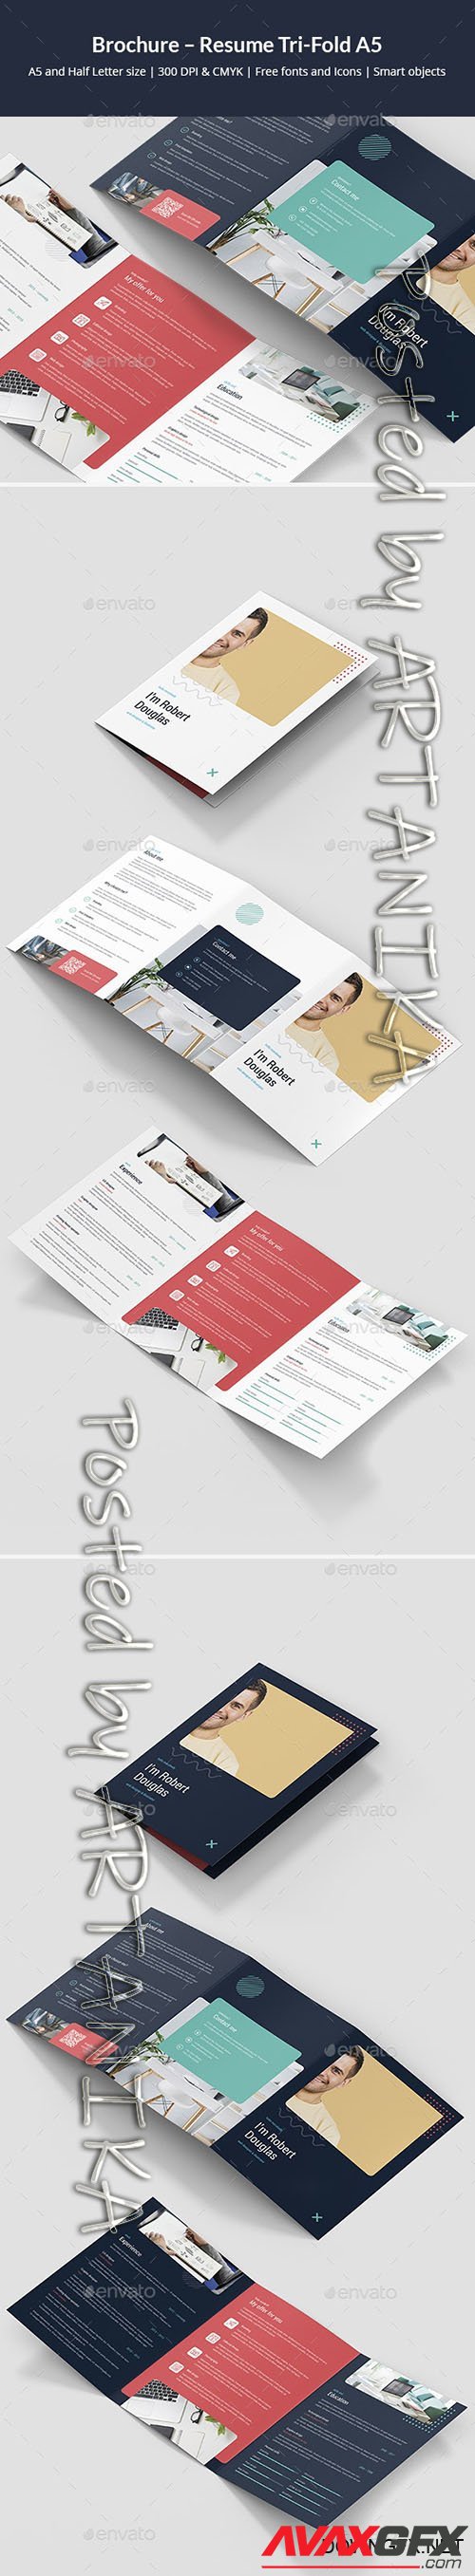 GraphicRiver - Brochure Resume Tri-Fold A5 24772483